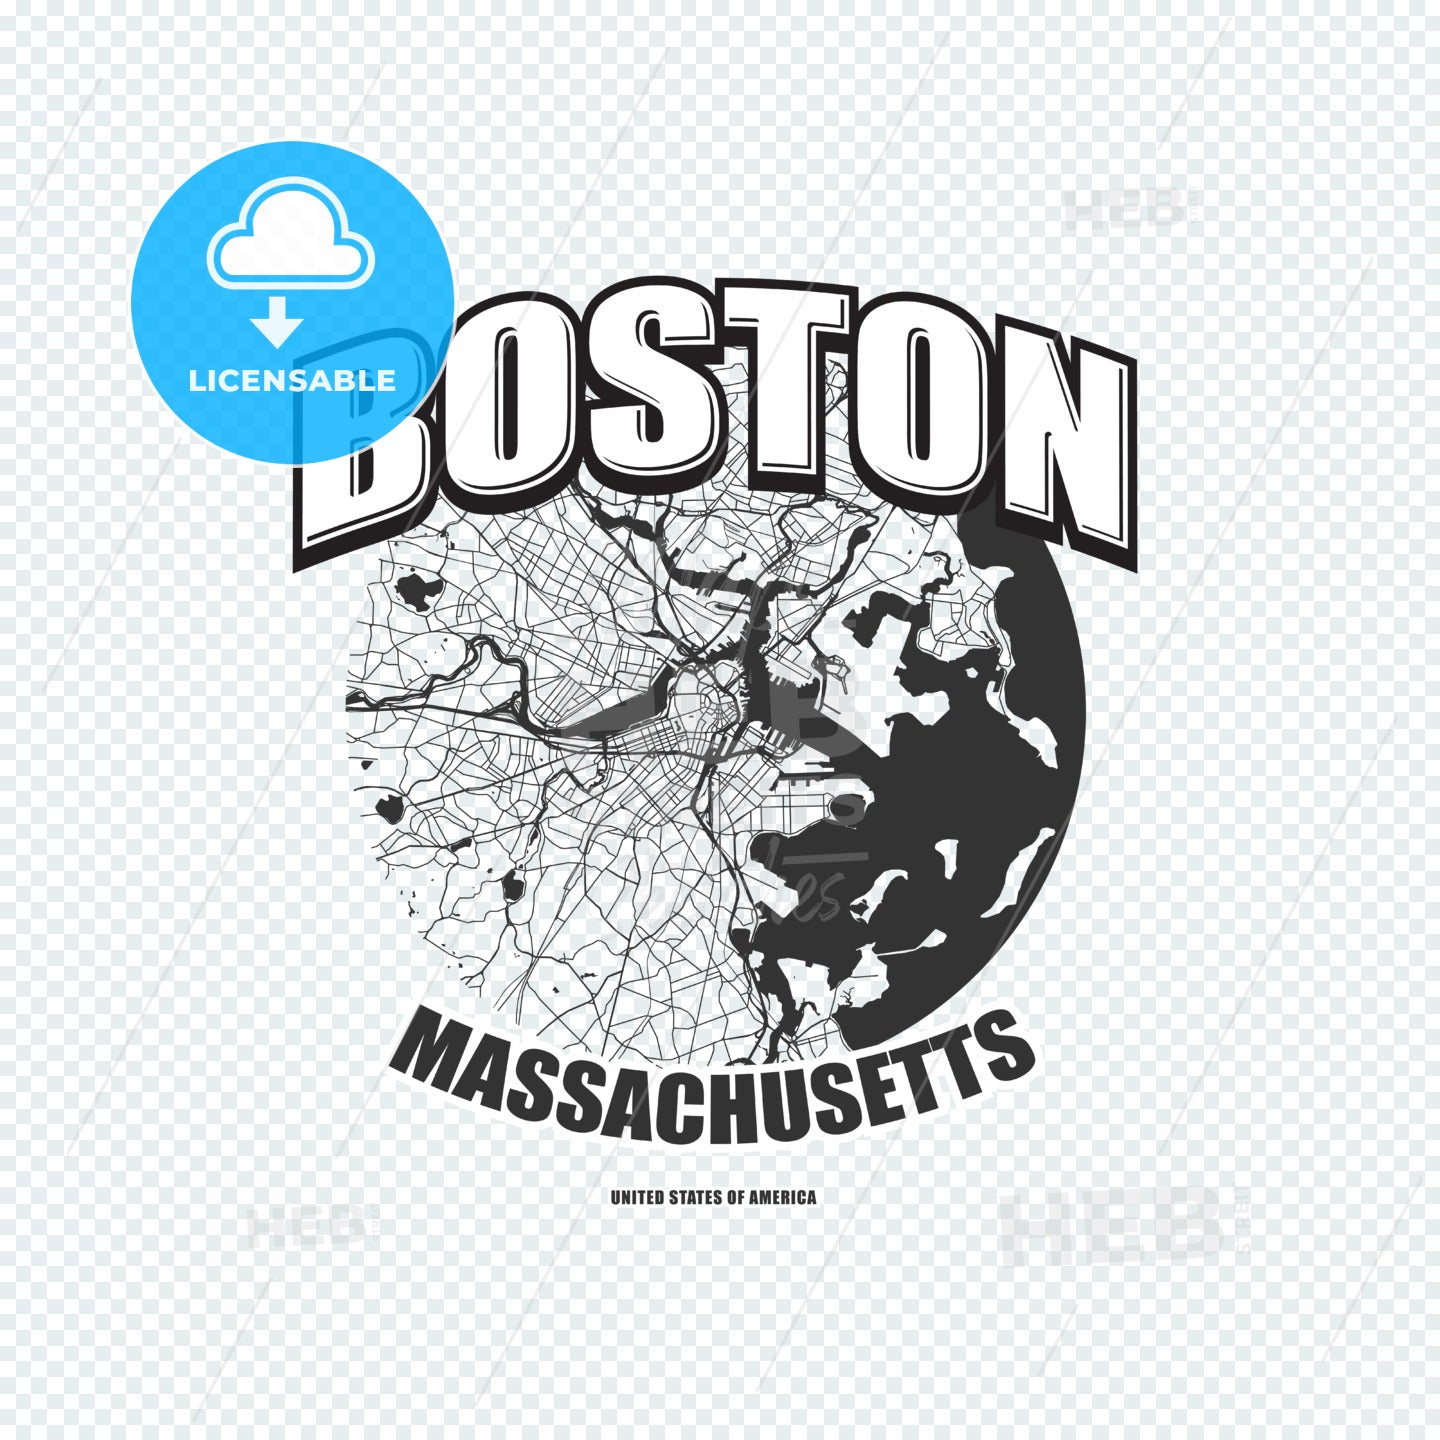 Boston, Massachusetts, logo artwork – instant download